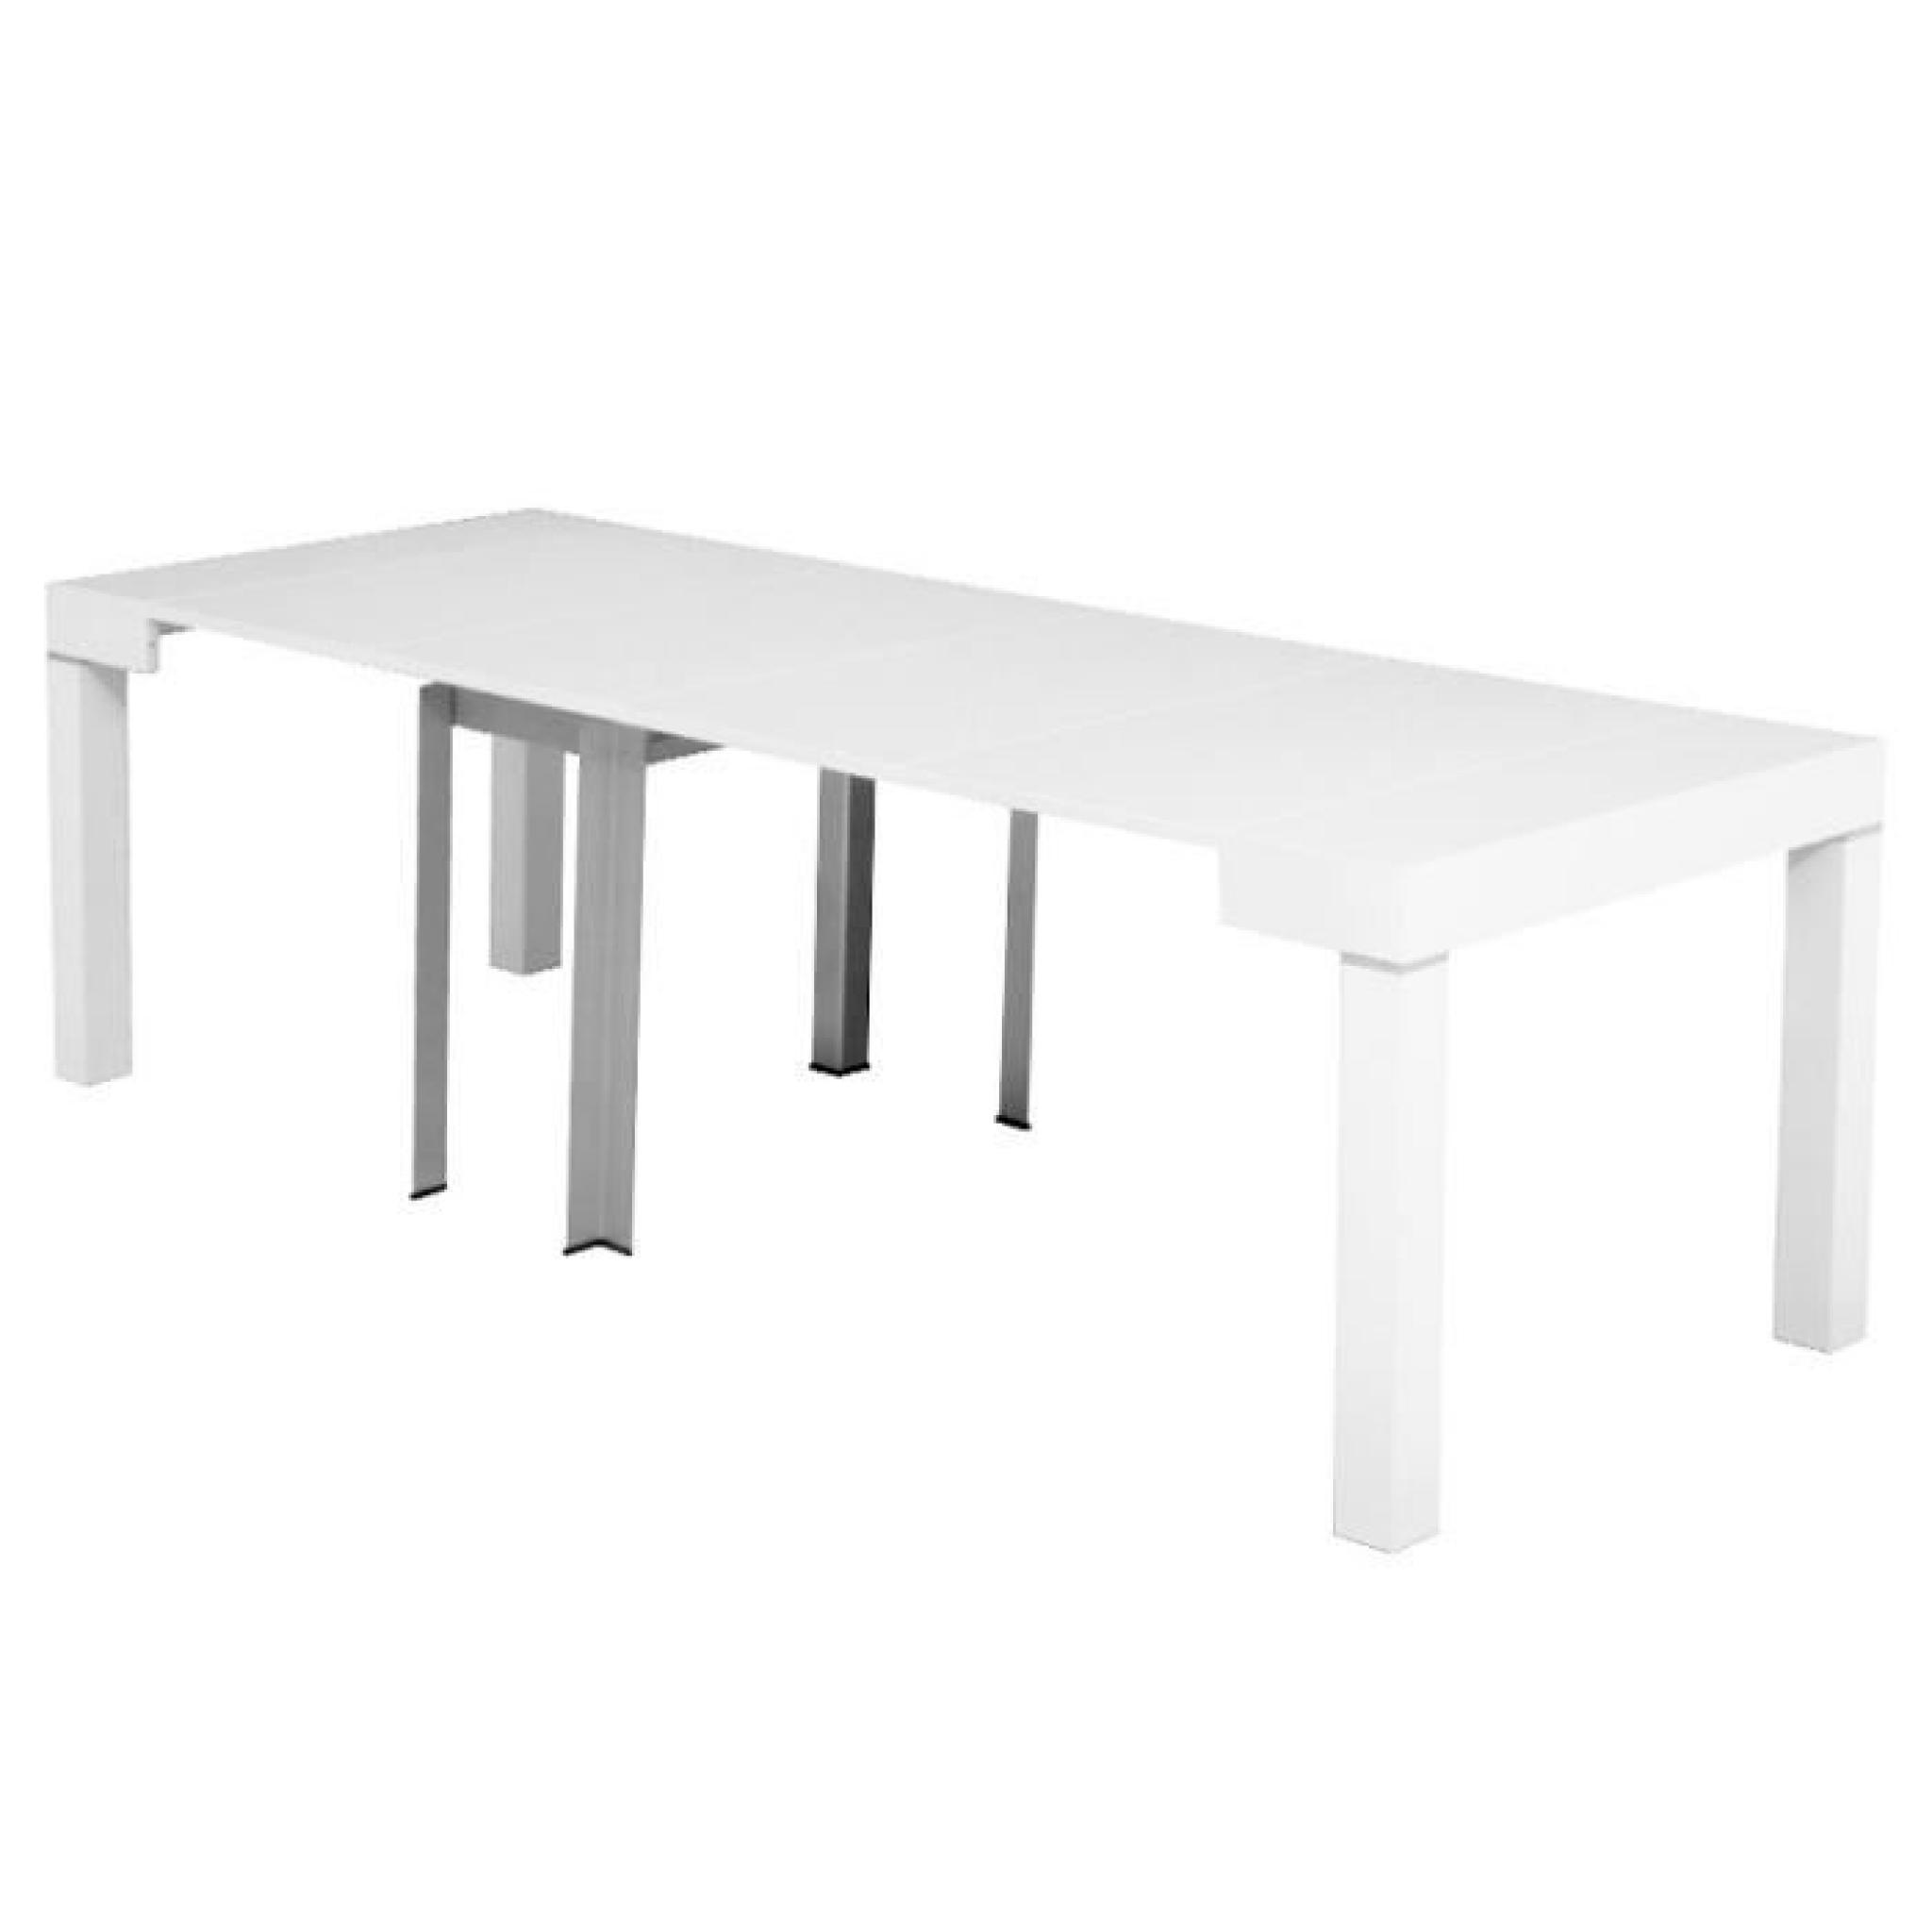 Table console laquée blanc extensible 10 personnes